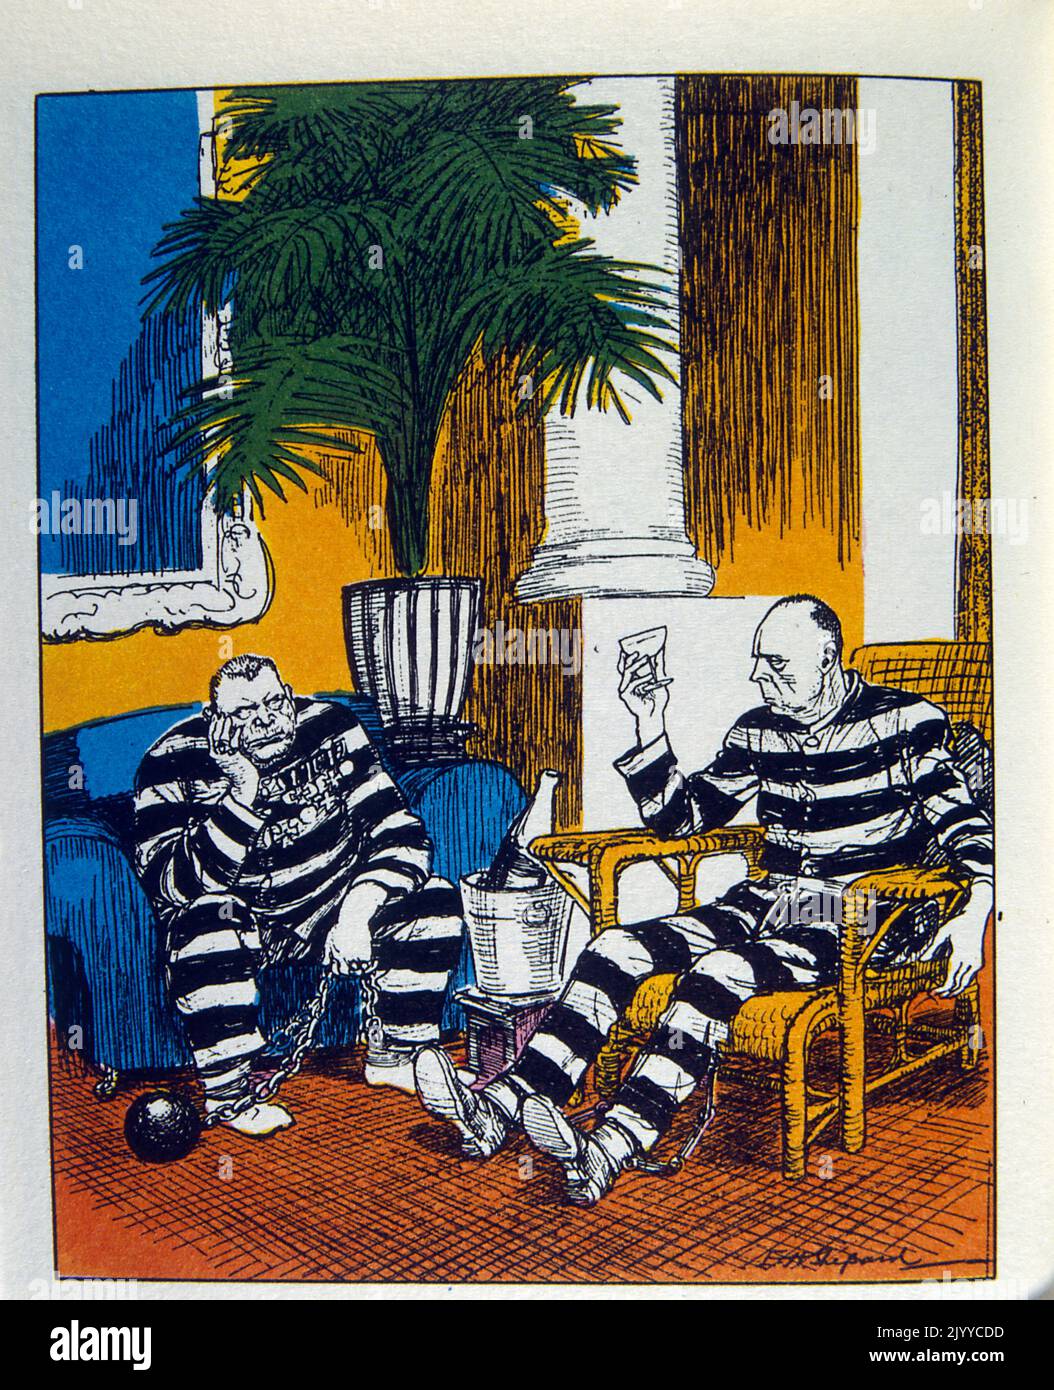 Farbige Illustration, in der zwei Gefangene in ihren gestreiften Gefängniskleidung sitzen, die an einem Ball und einer Kette befestigt sind und Champagner in einem noblen Hotel trinken. Stockfoto